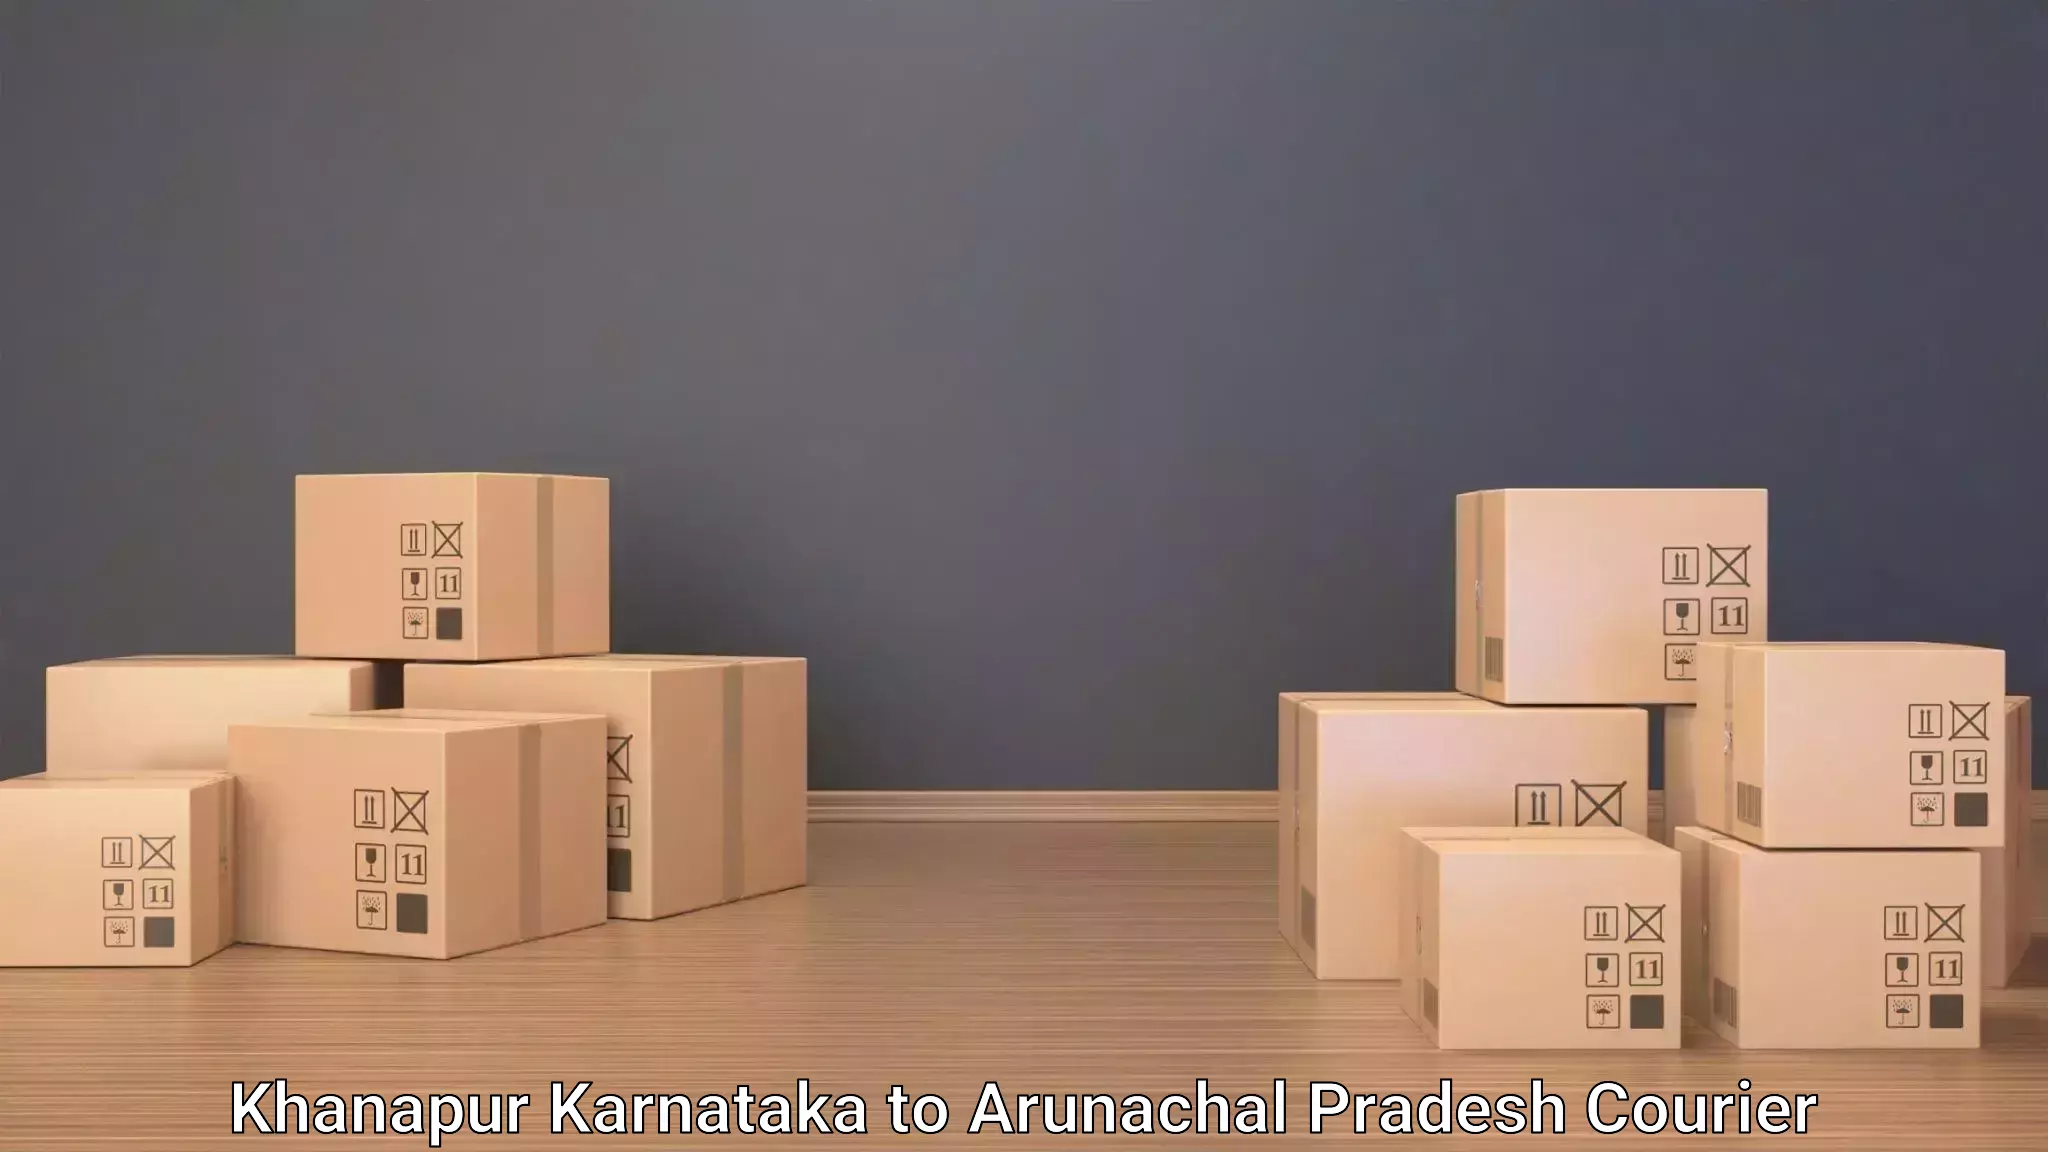 Urgent luggage shipment Khanapur Karnataka to Chowkham